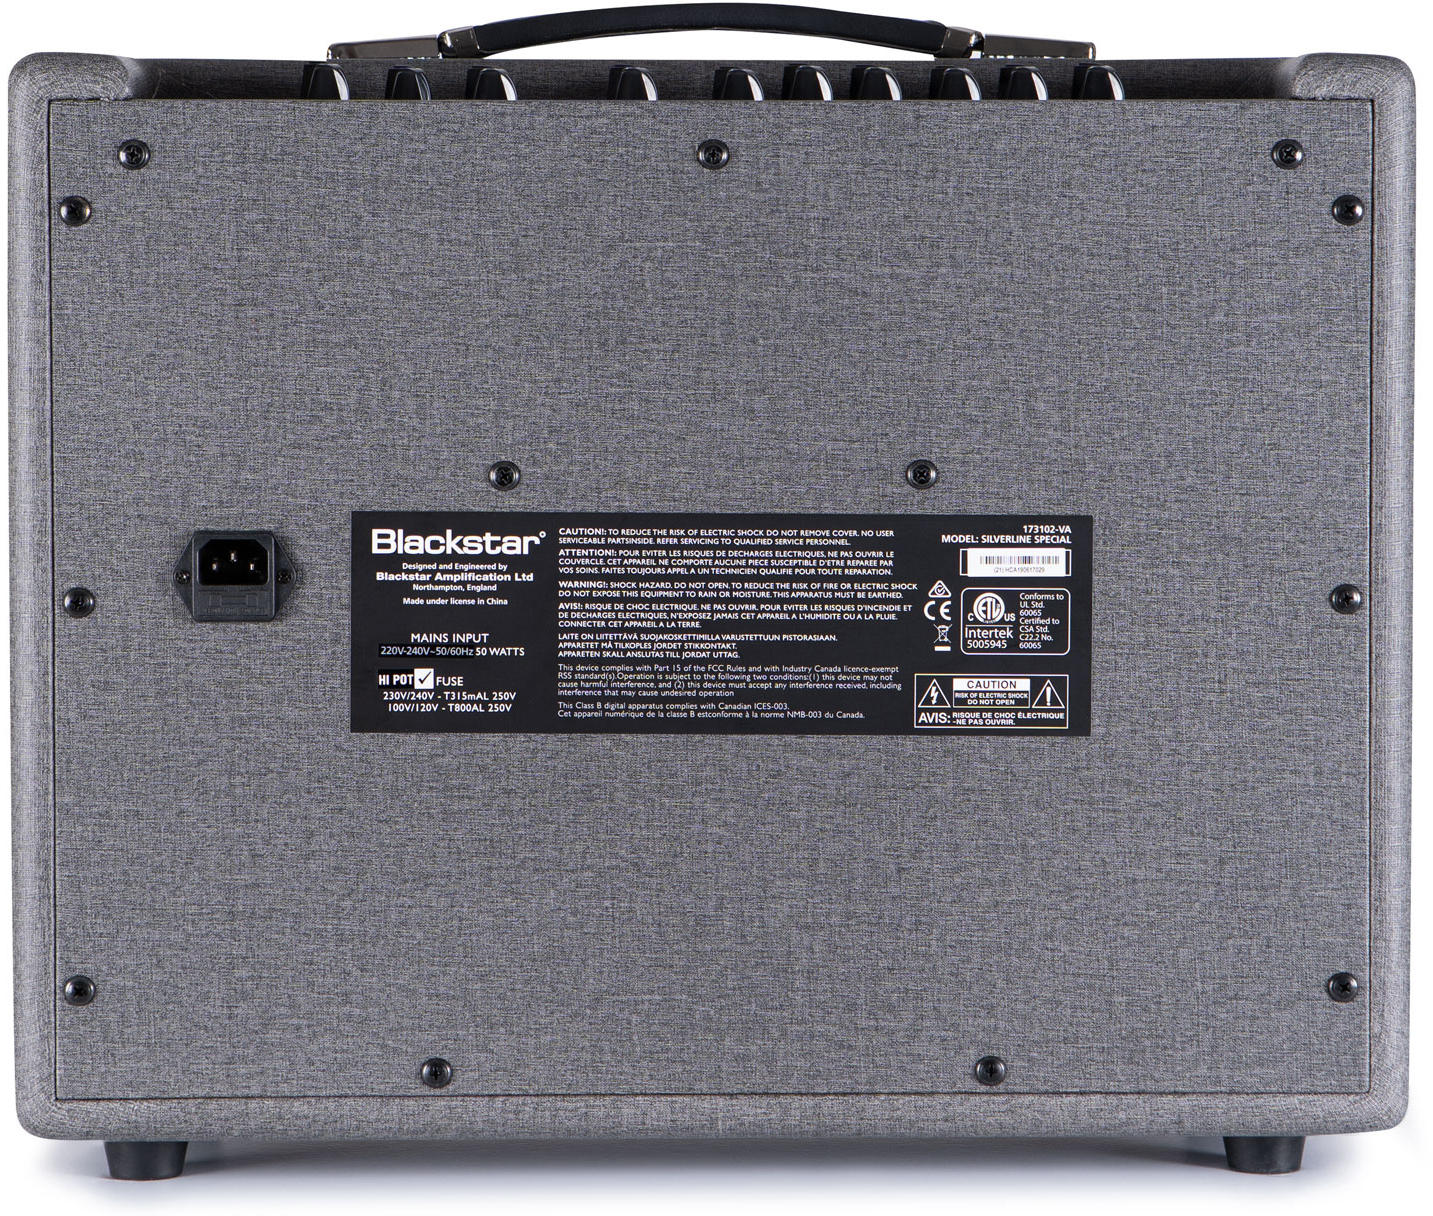 Blackstar Silverline Special 50w 1x12 - Combo amplificador para guitarra eléctrica - Variation 2